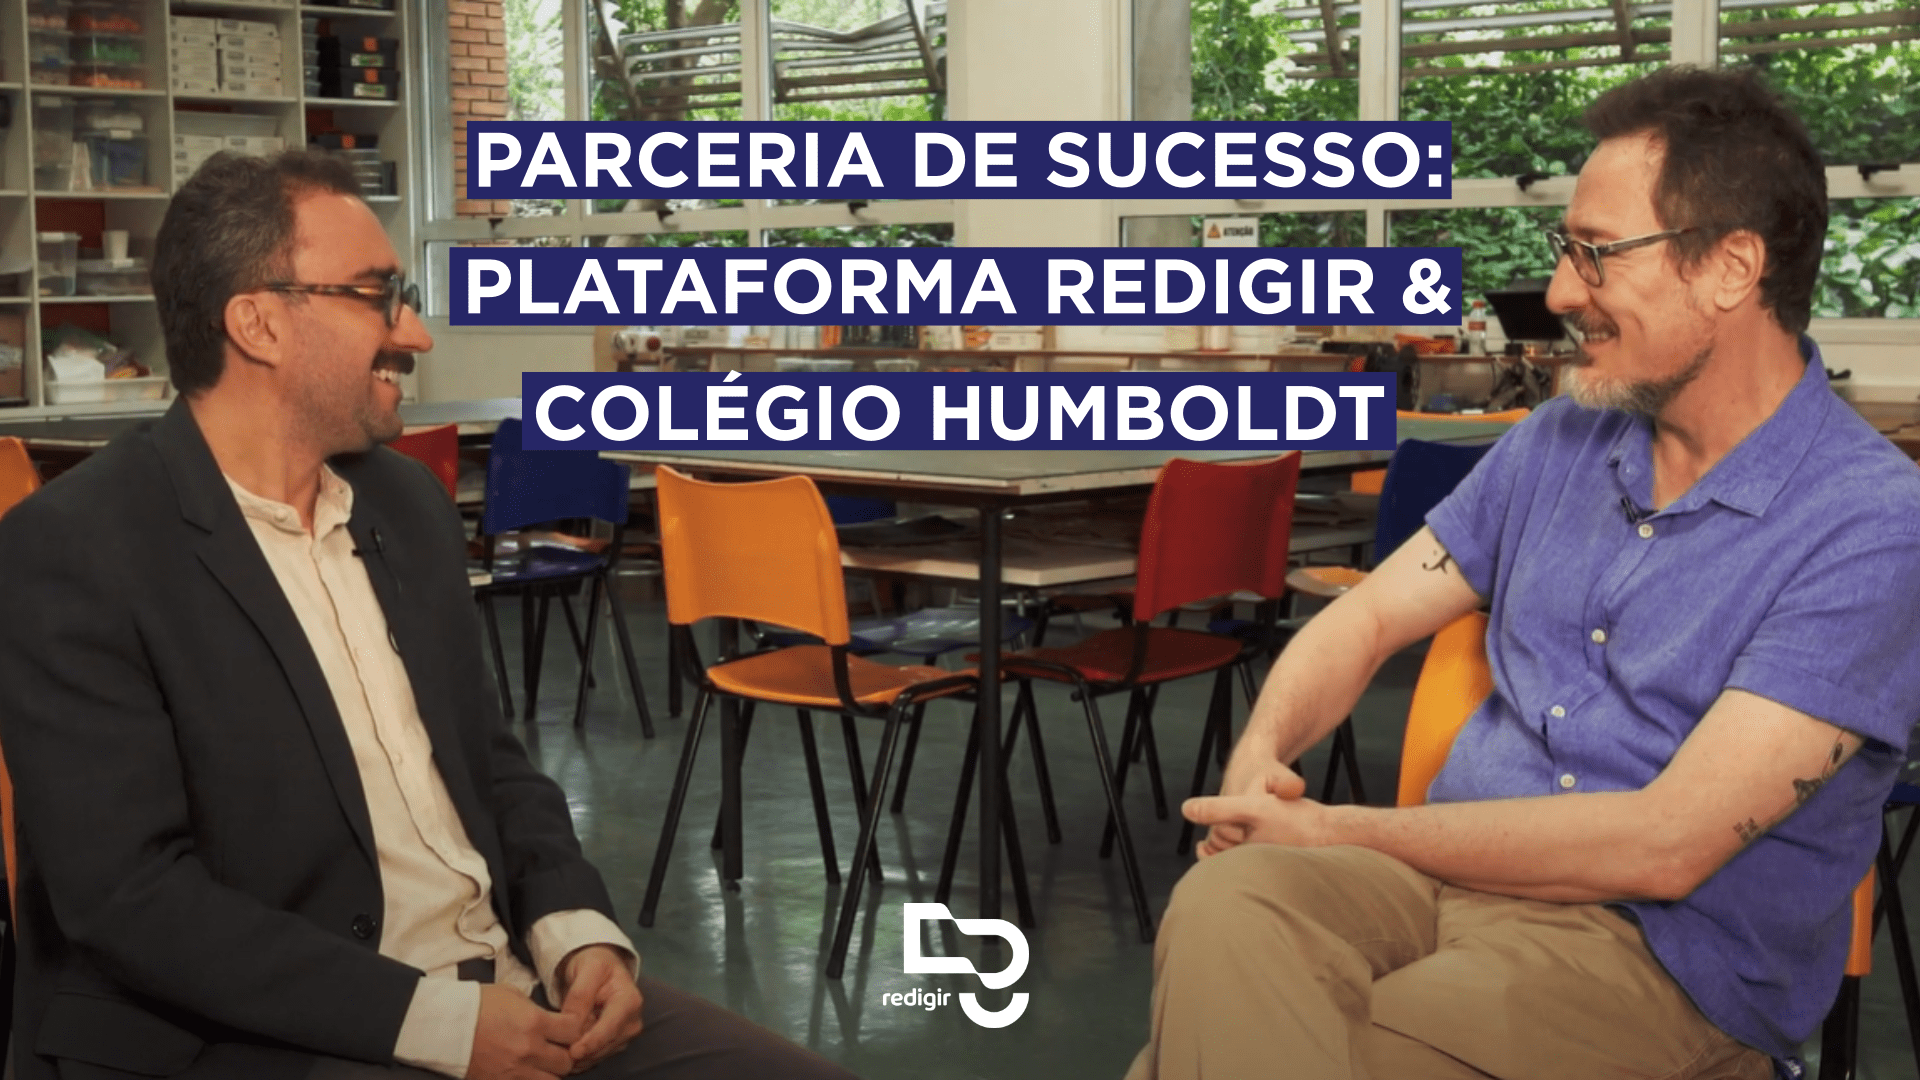 Parceria de Sucesso: Plataforma Redigir & Colégio Humboldt